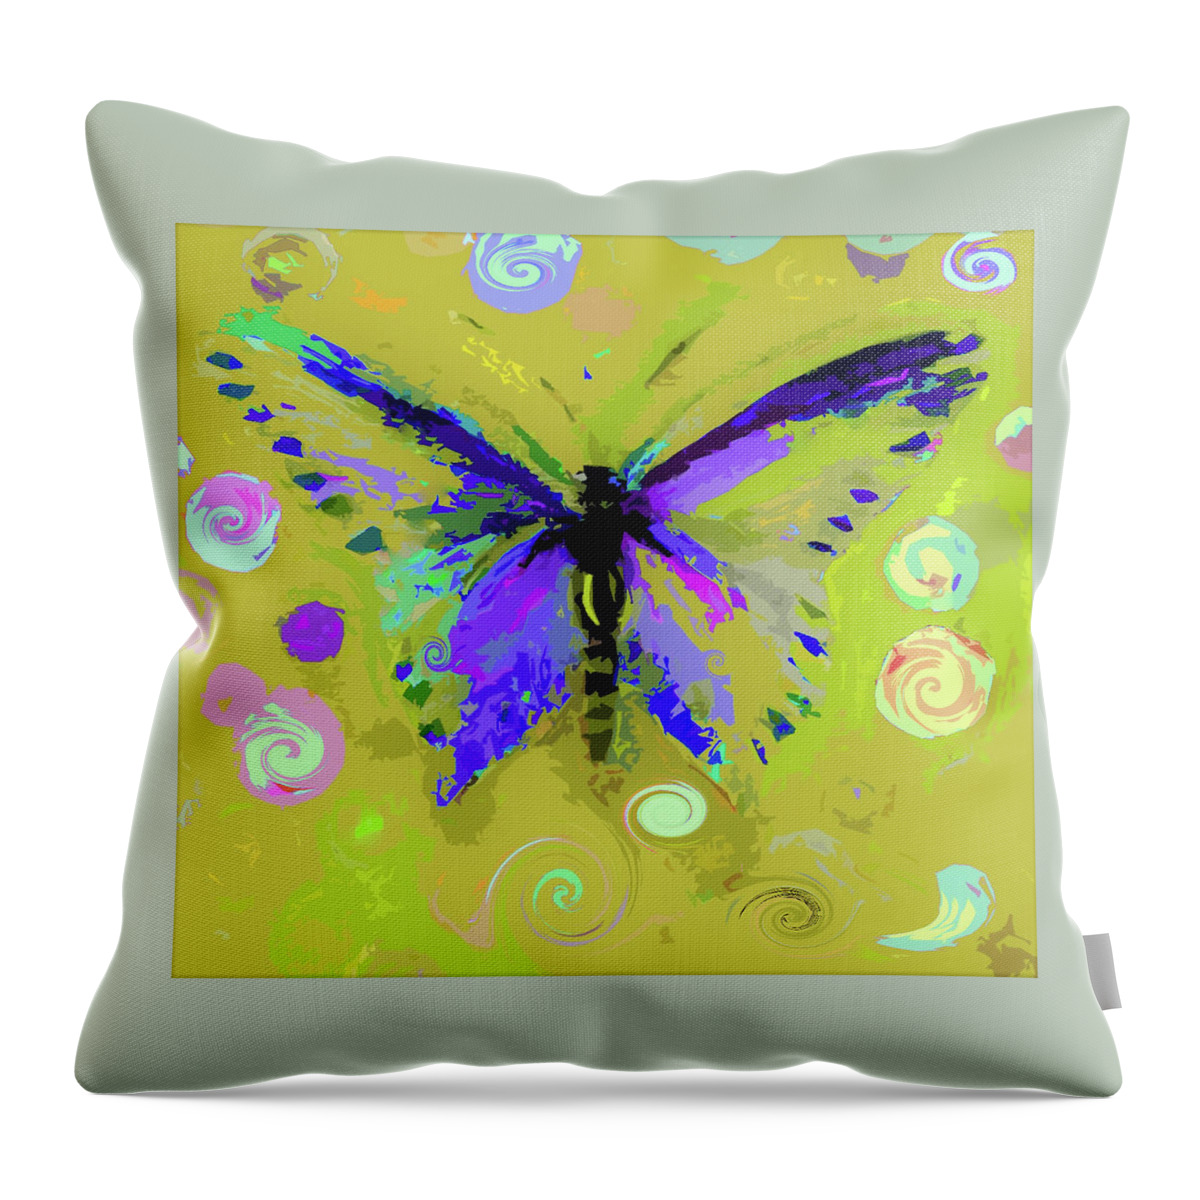 Ocher Throw Pillow featuring the digital art Ochre Butterfly And Twirls by Lisa Kaiser